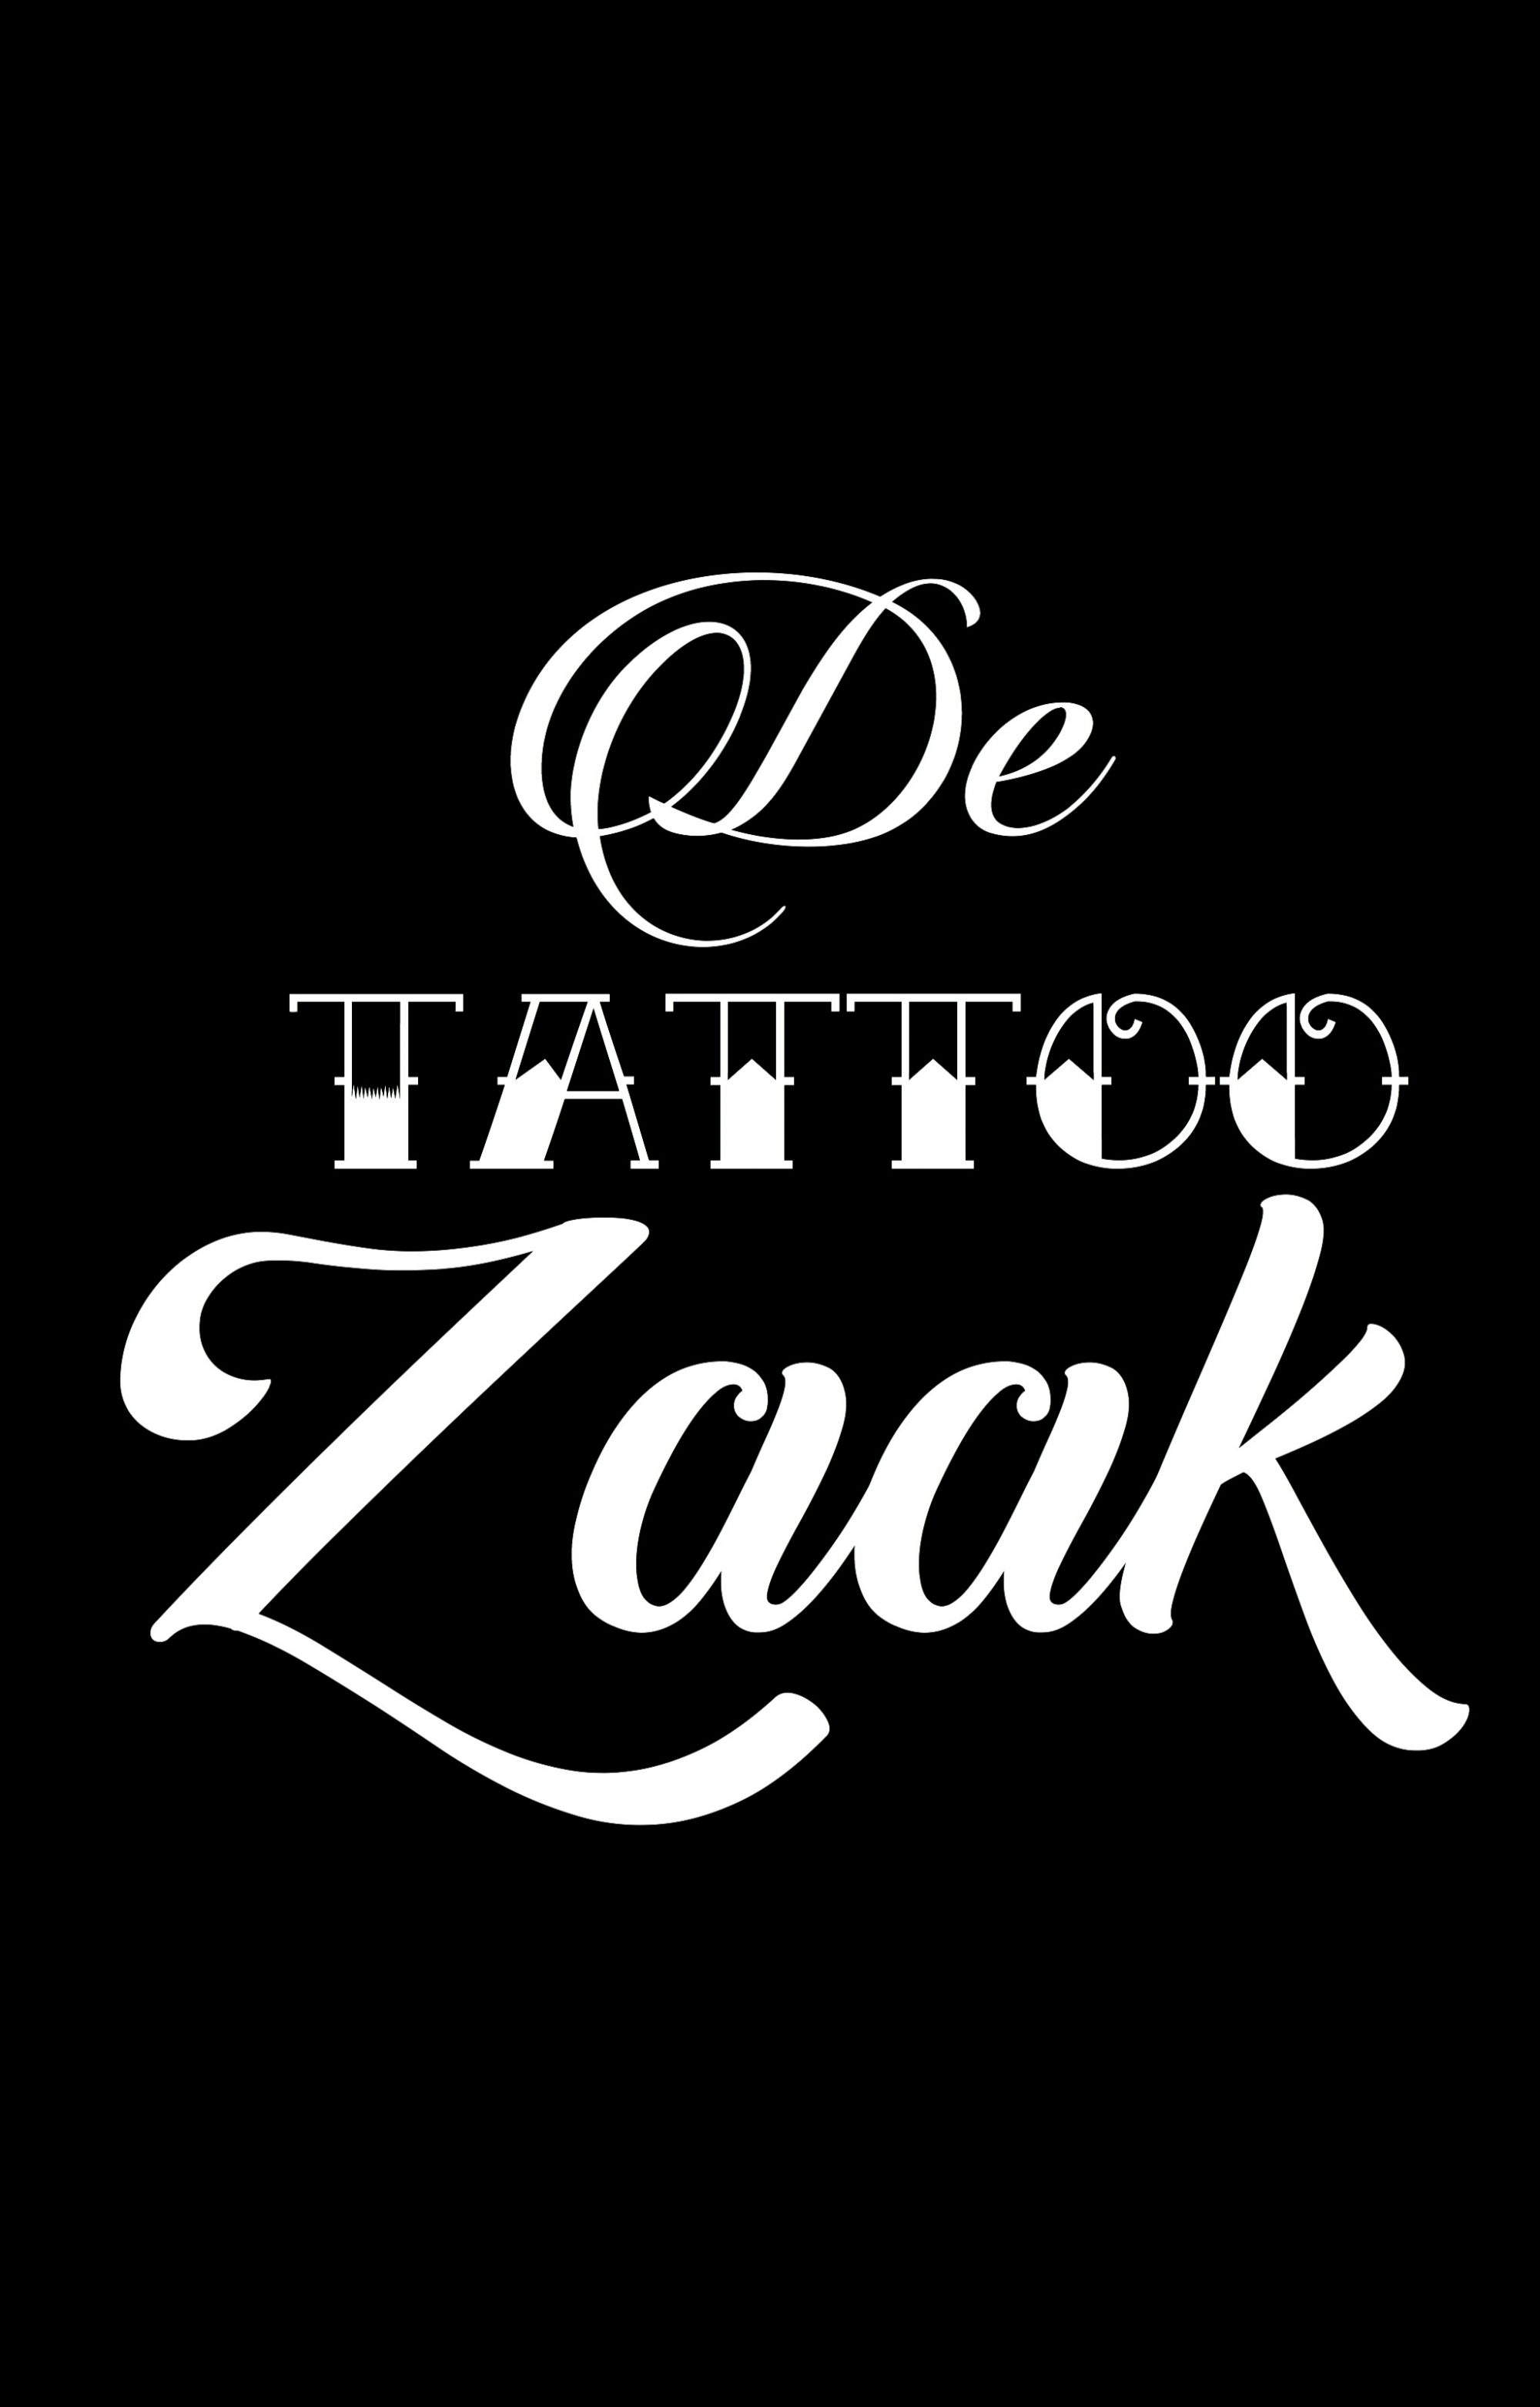 De Tattoo Zaak